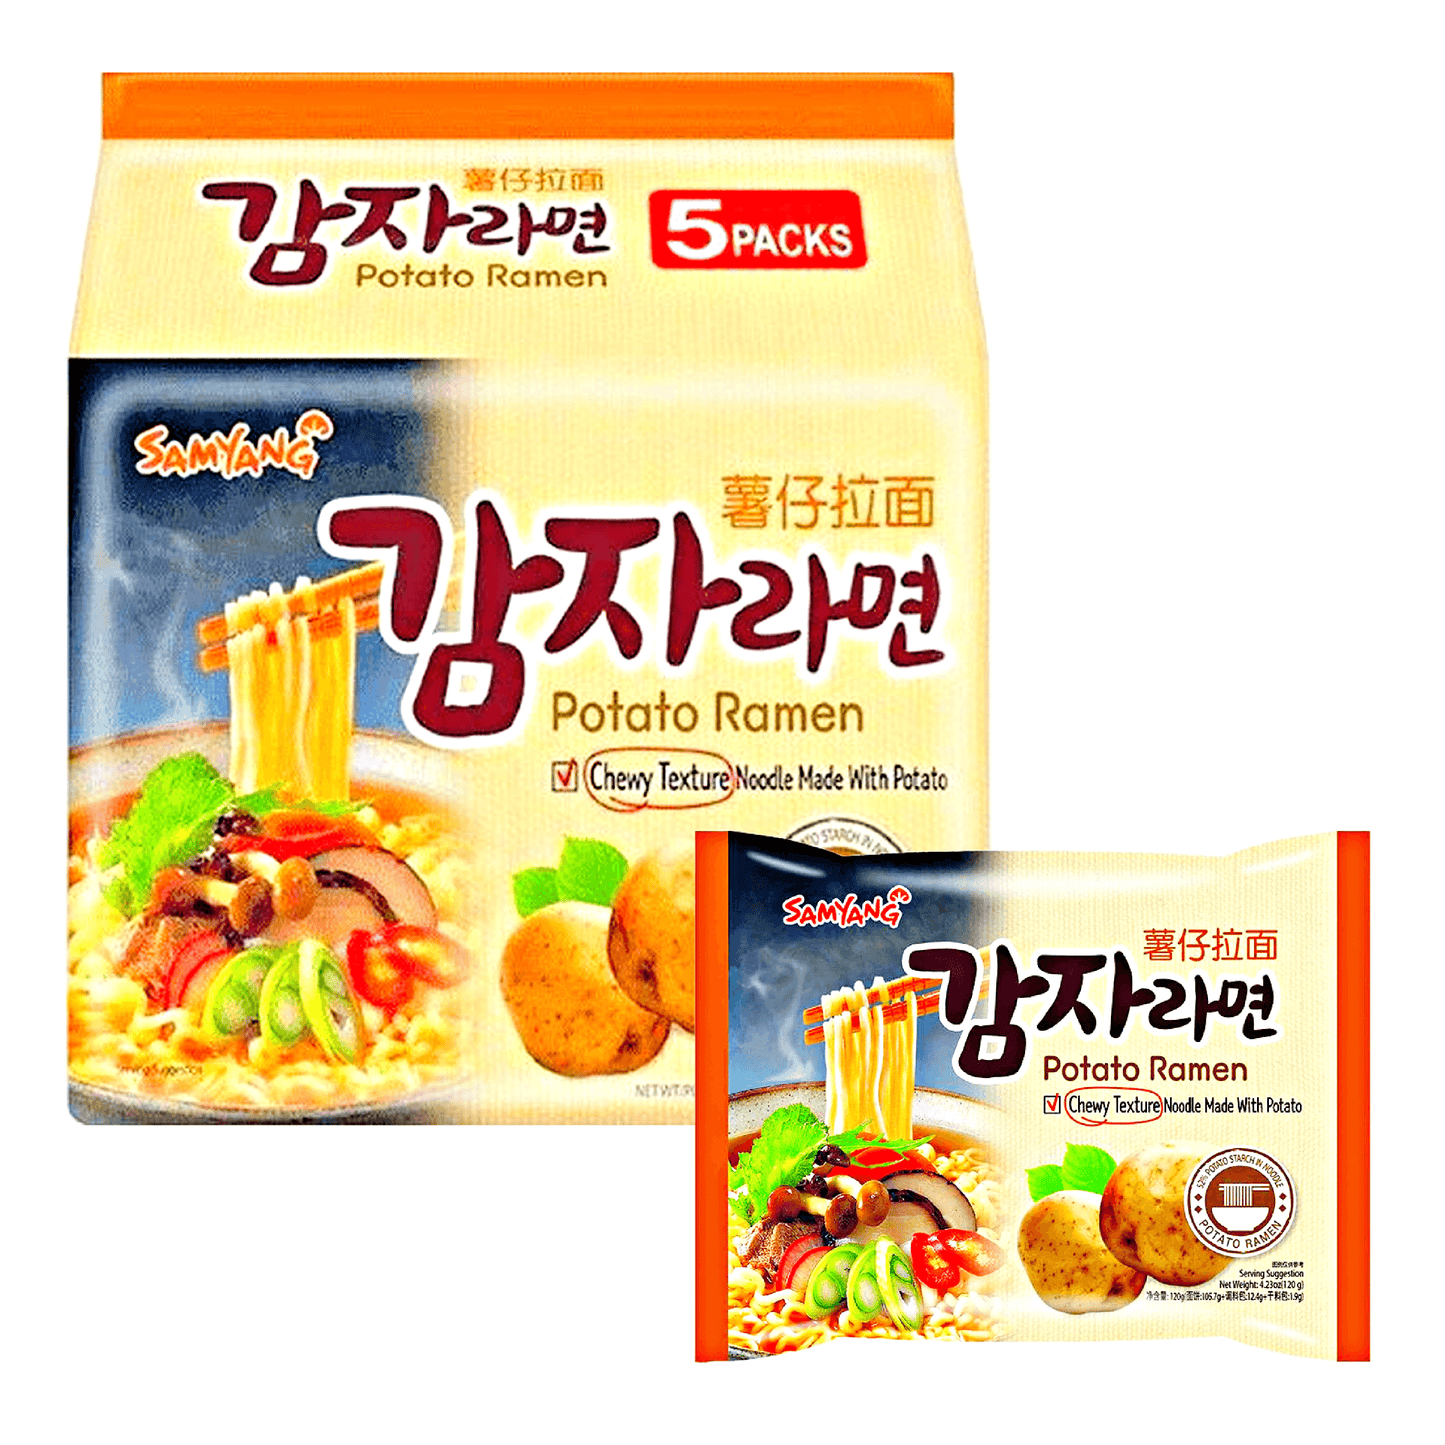 SamYang Potato Ramen 5x120g - The Snacks Box - Asian Snacks Store - The Snacks Box - Korean Snack - Japanese Snack